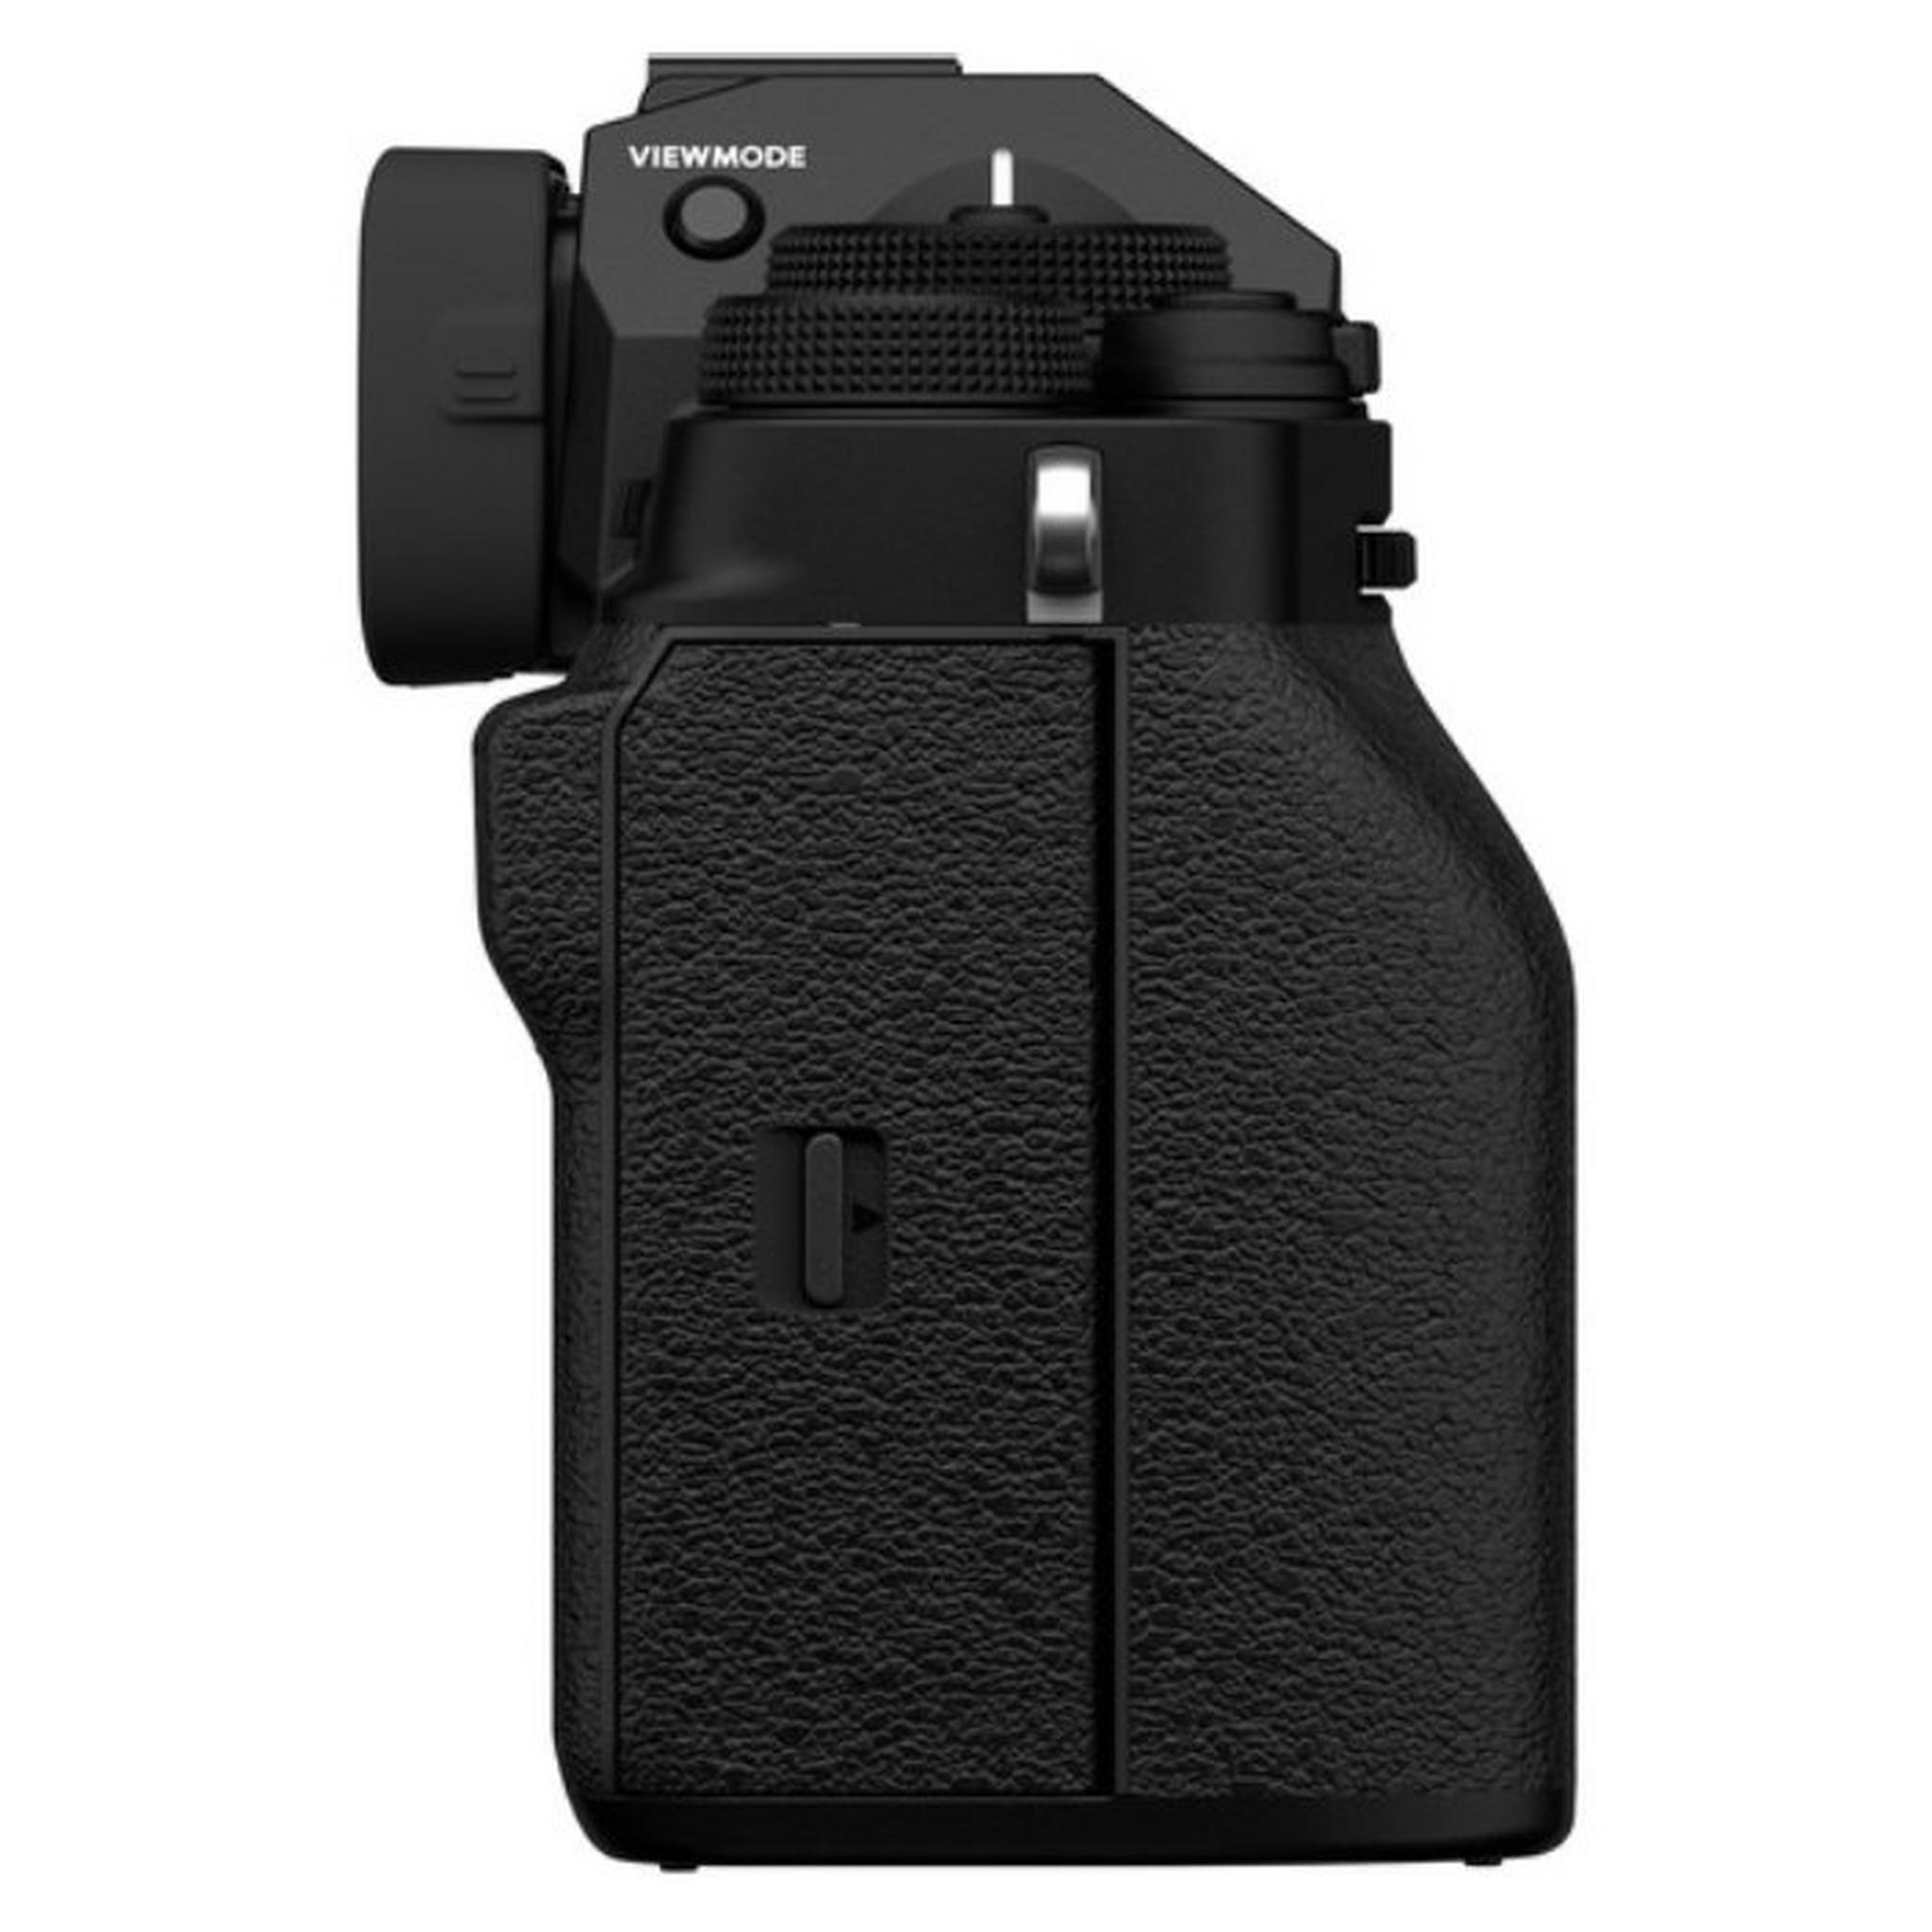 كاميرا فوجي فيلم X-T4 ديجيتال بدون مرآة مع عدسة 18-55 ملم - أسود